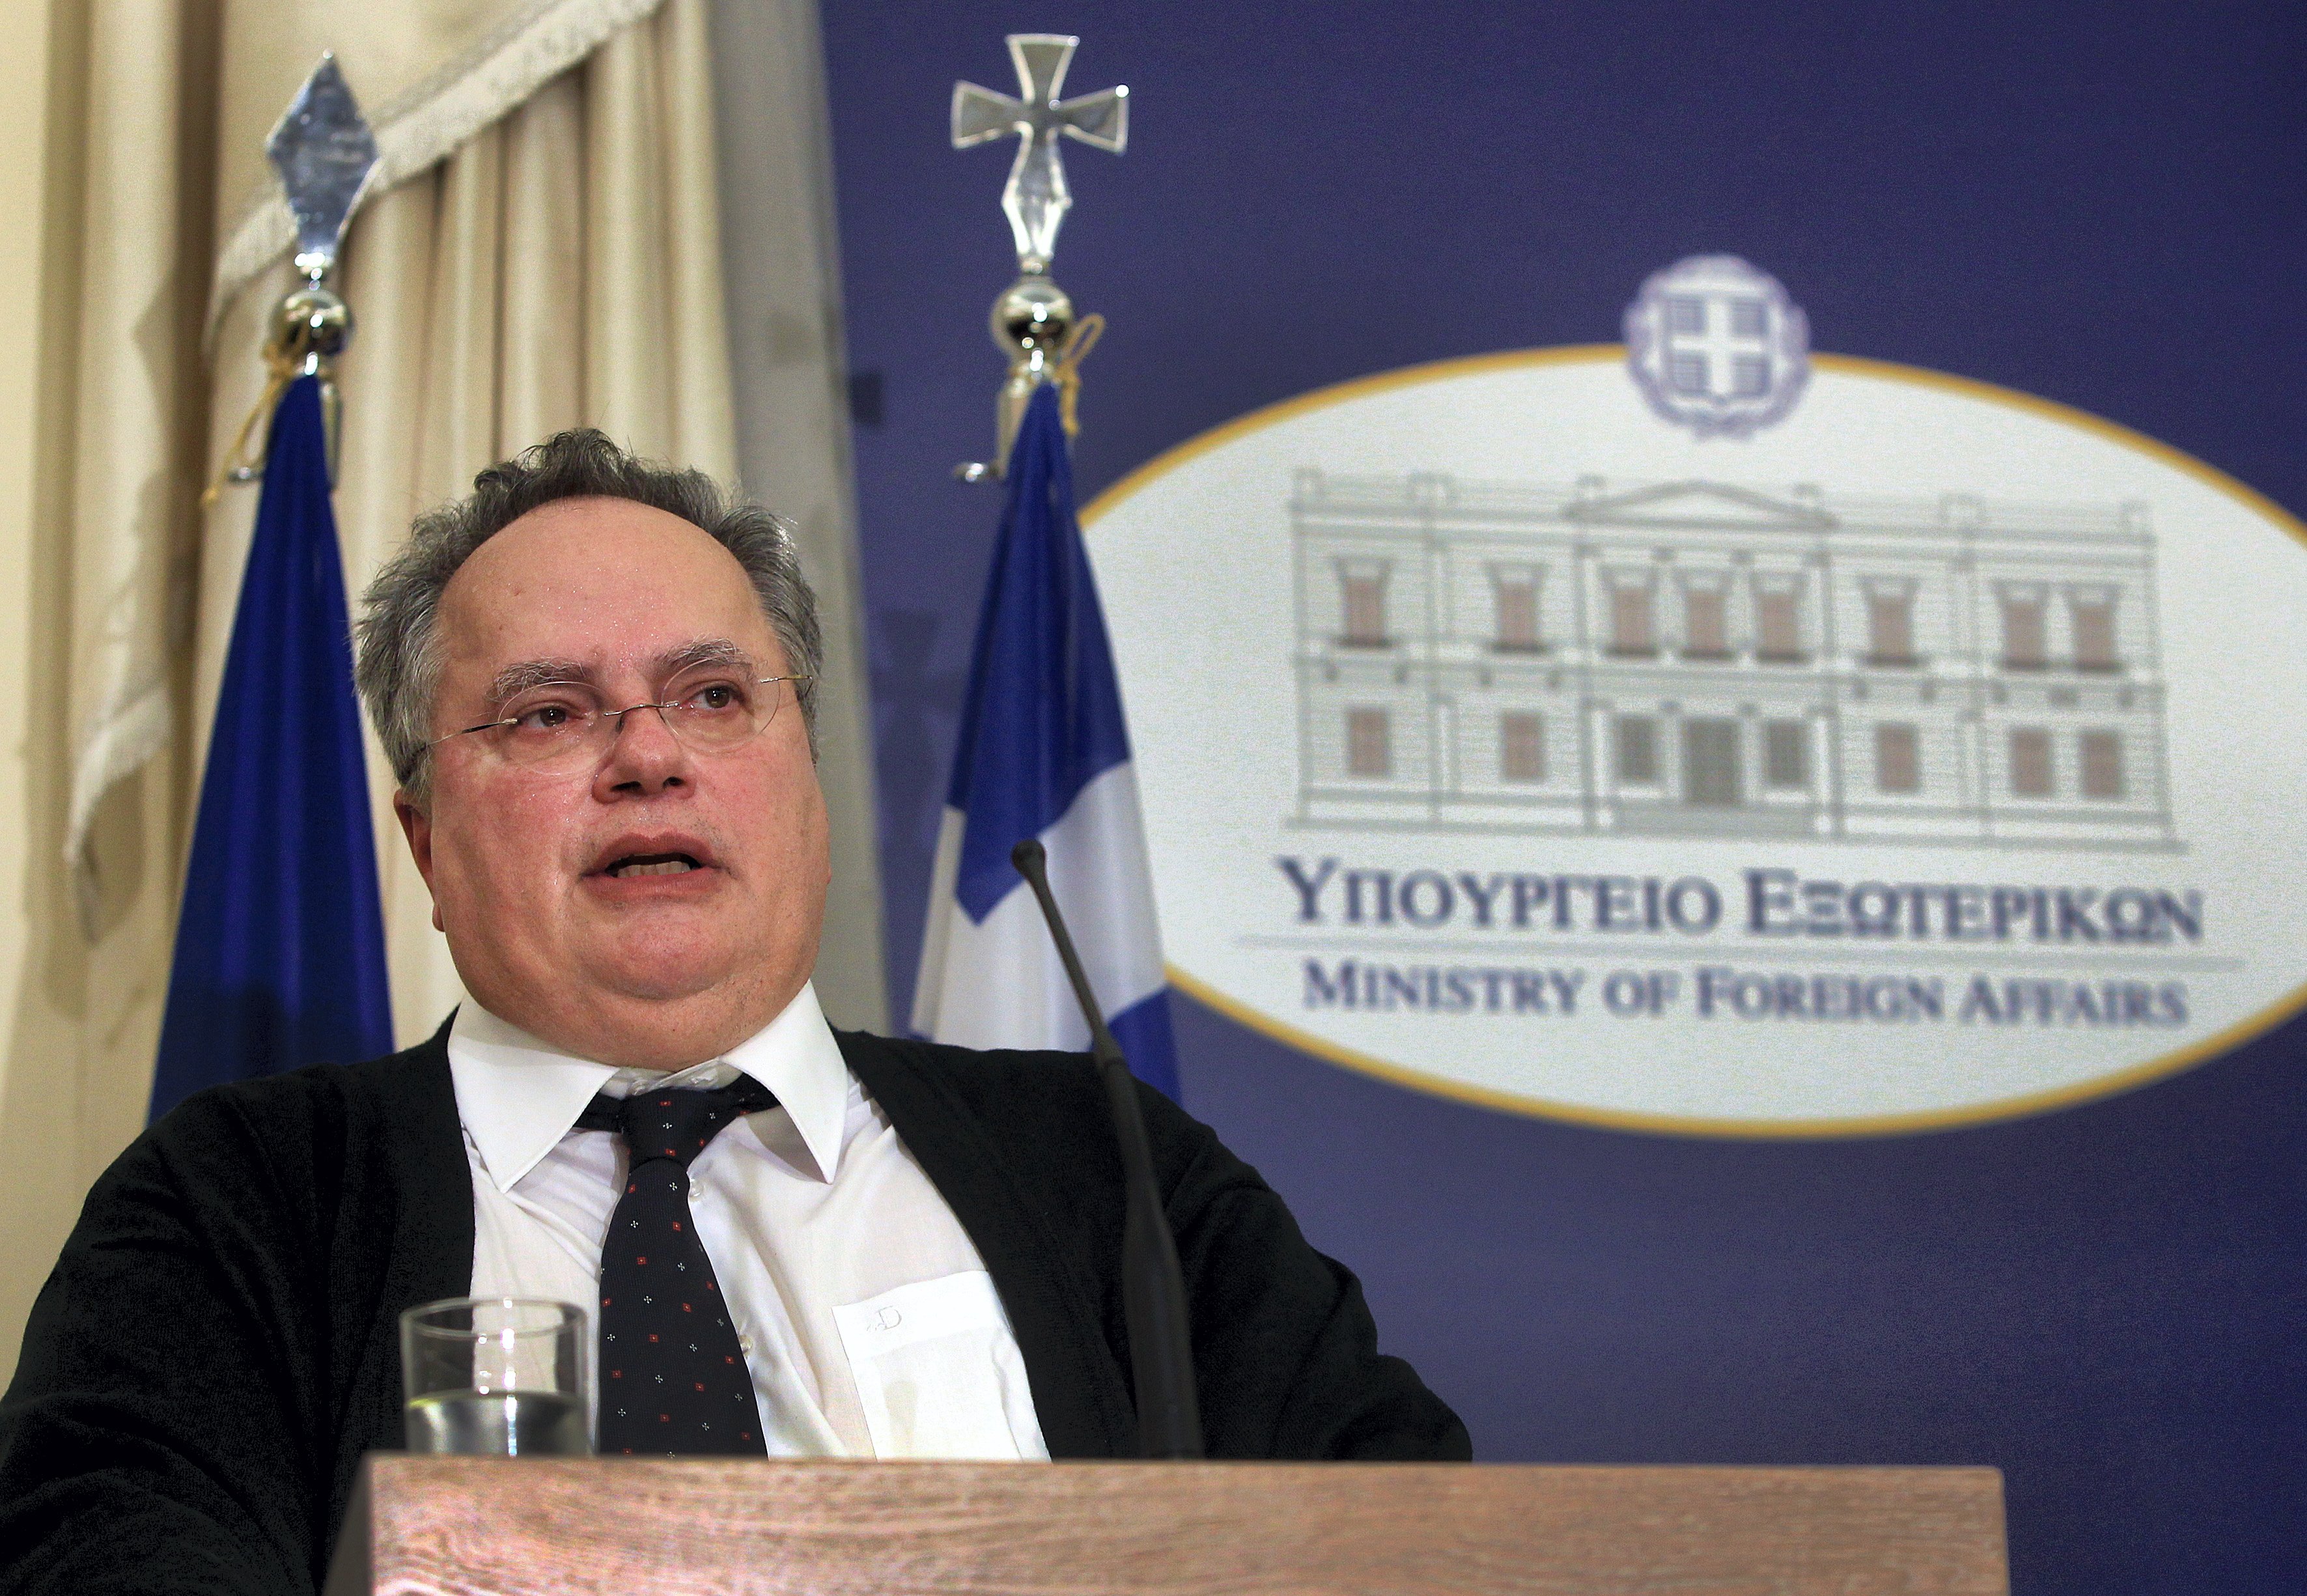 Ν. Κοτζιάς: «Δεν οφείλει μόνο η Ελλάδα απαντήσεις»